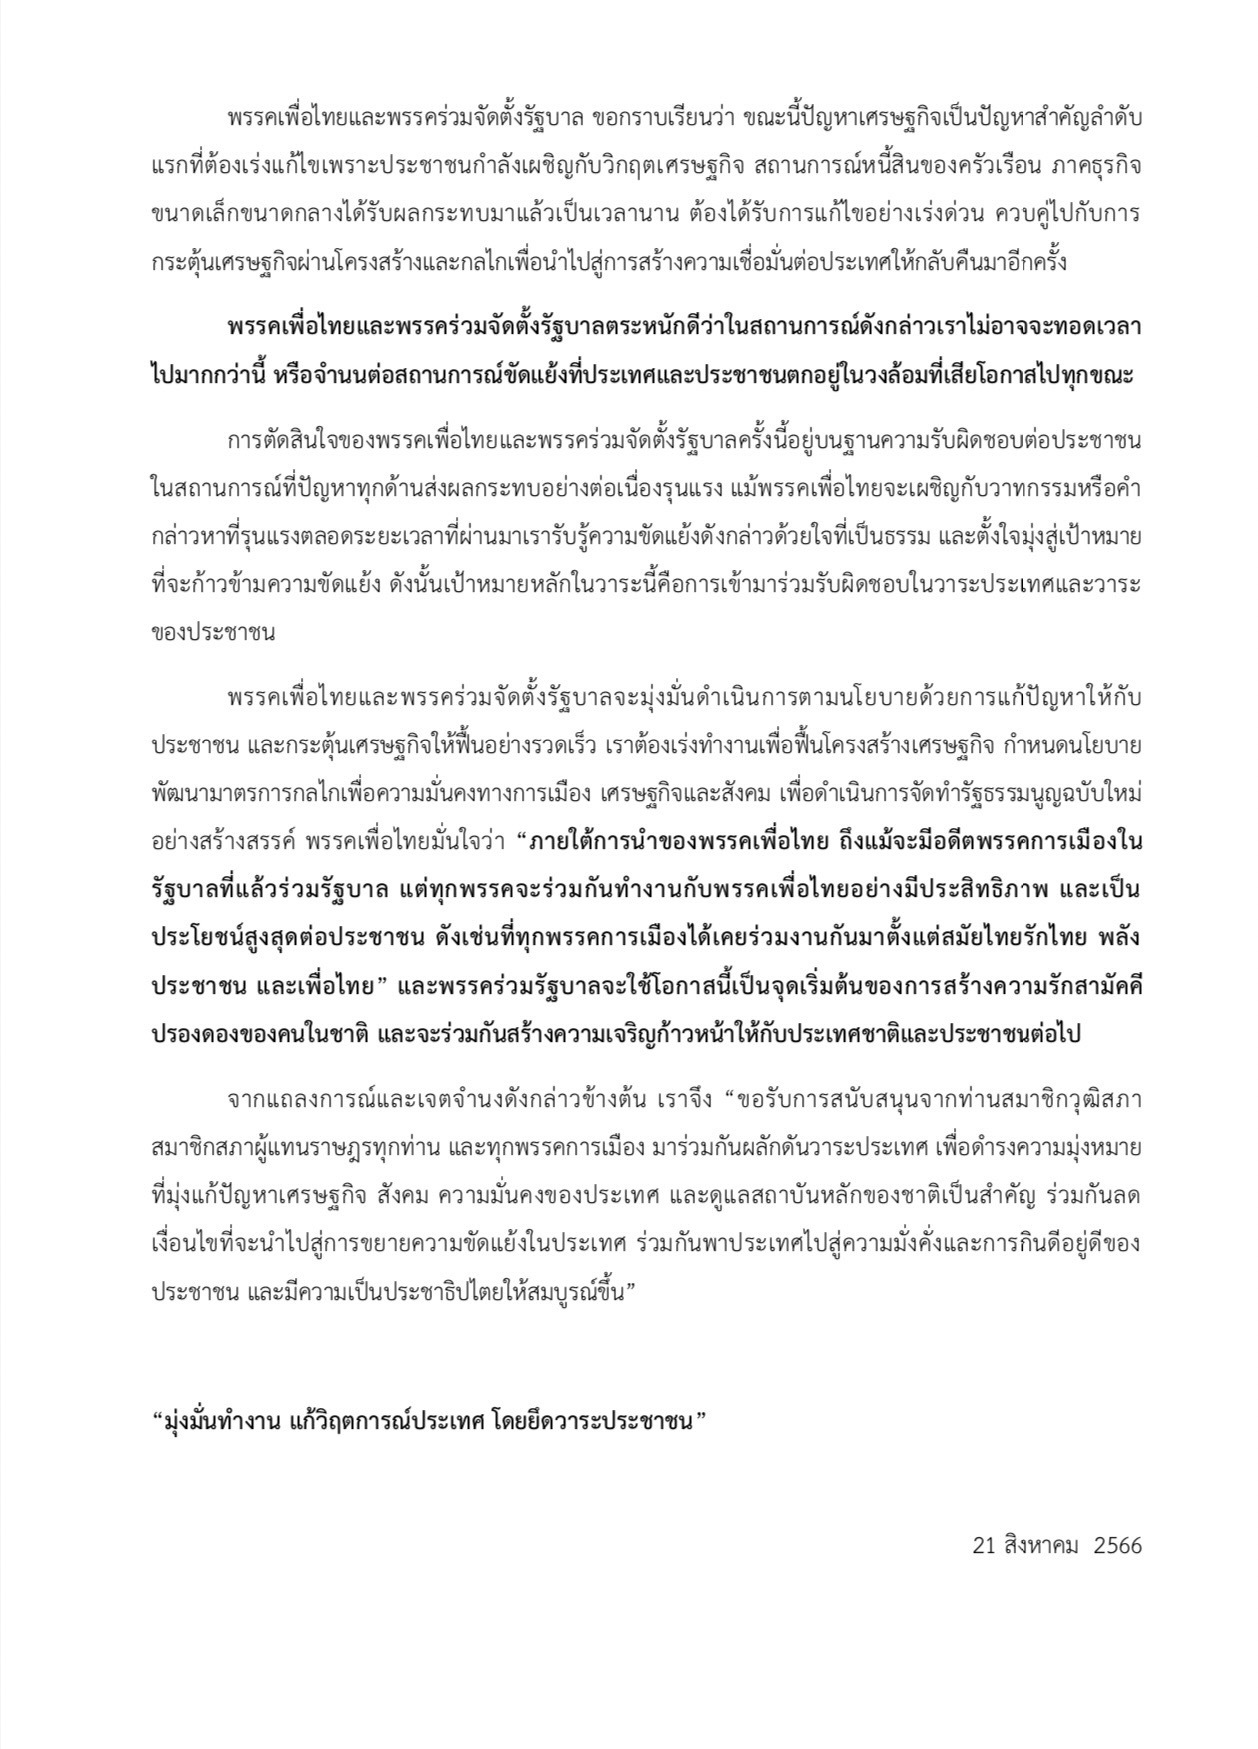 สรุปแถลงการณ์ พรรคเพื่อไทย จัดตั้งรัฐบาล 11 พรรค 314 เสียง เสนอชื่อ เศรษฐา เป็นนายกรัฐมนตรี